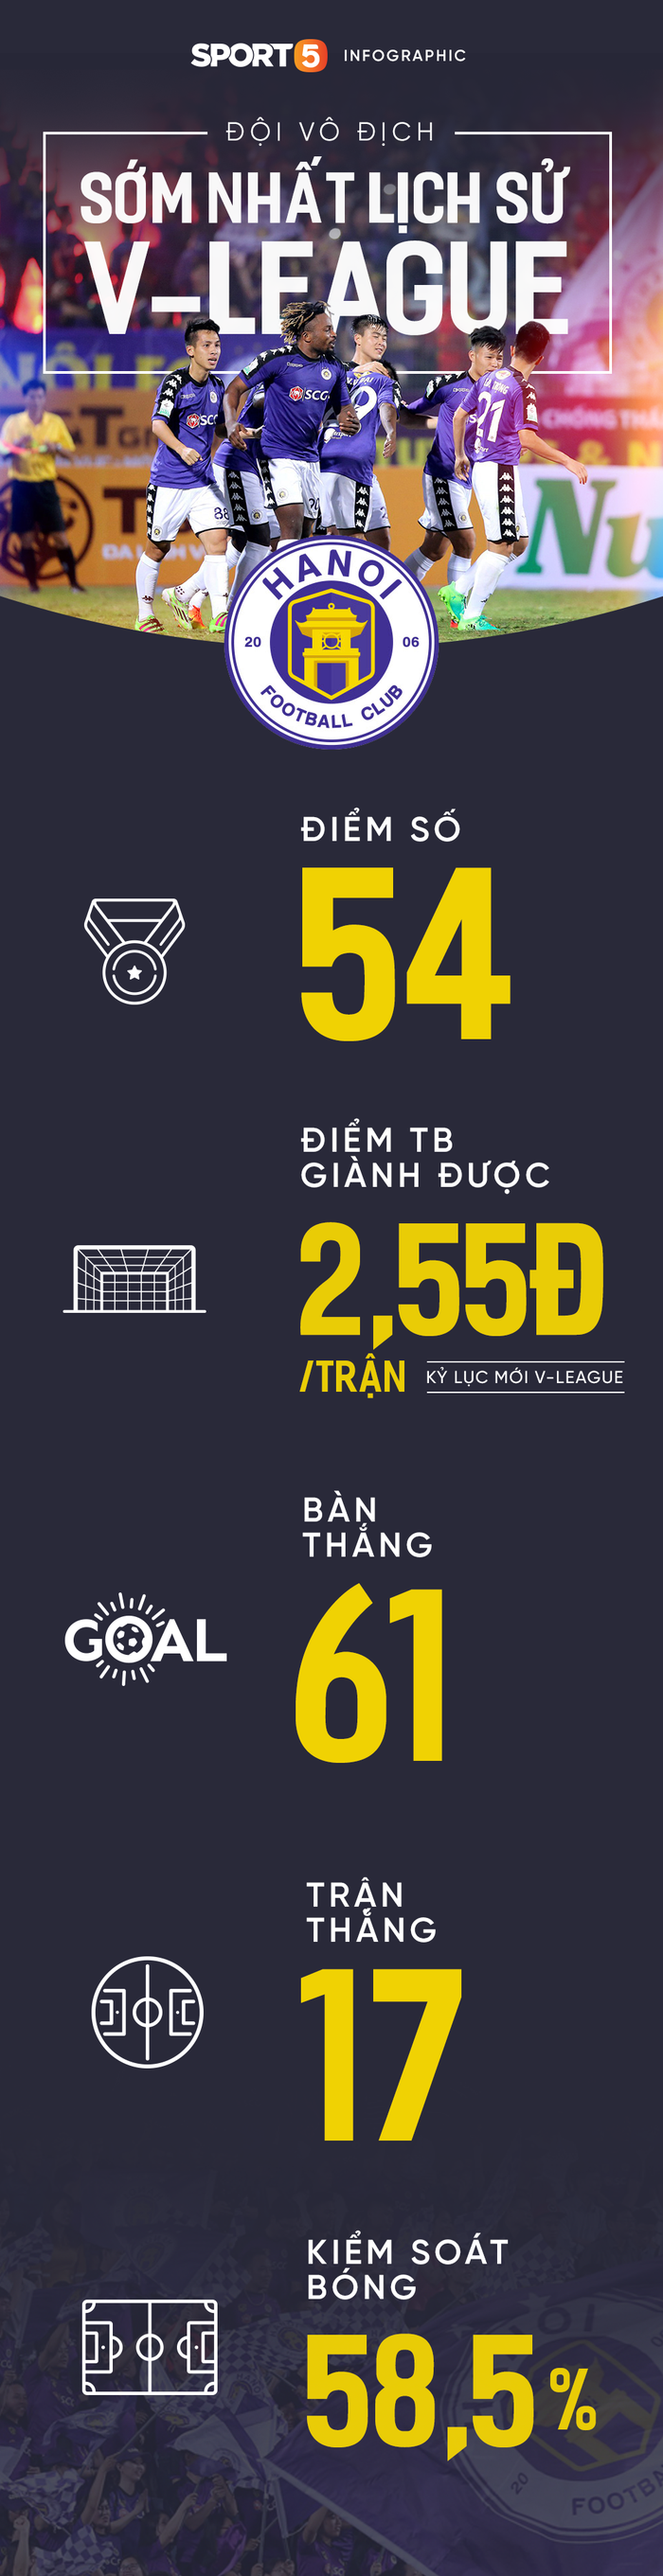 Hà Nội vô địch V-League 2018: Đội bóng thủ đô ghi dấu ấn lịch sử - Ảnh 2.